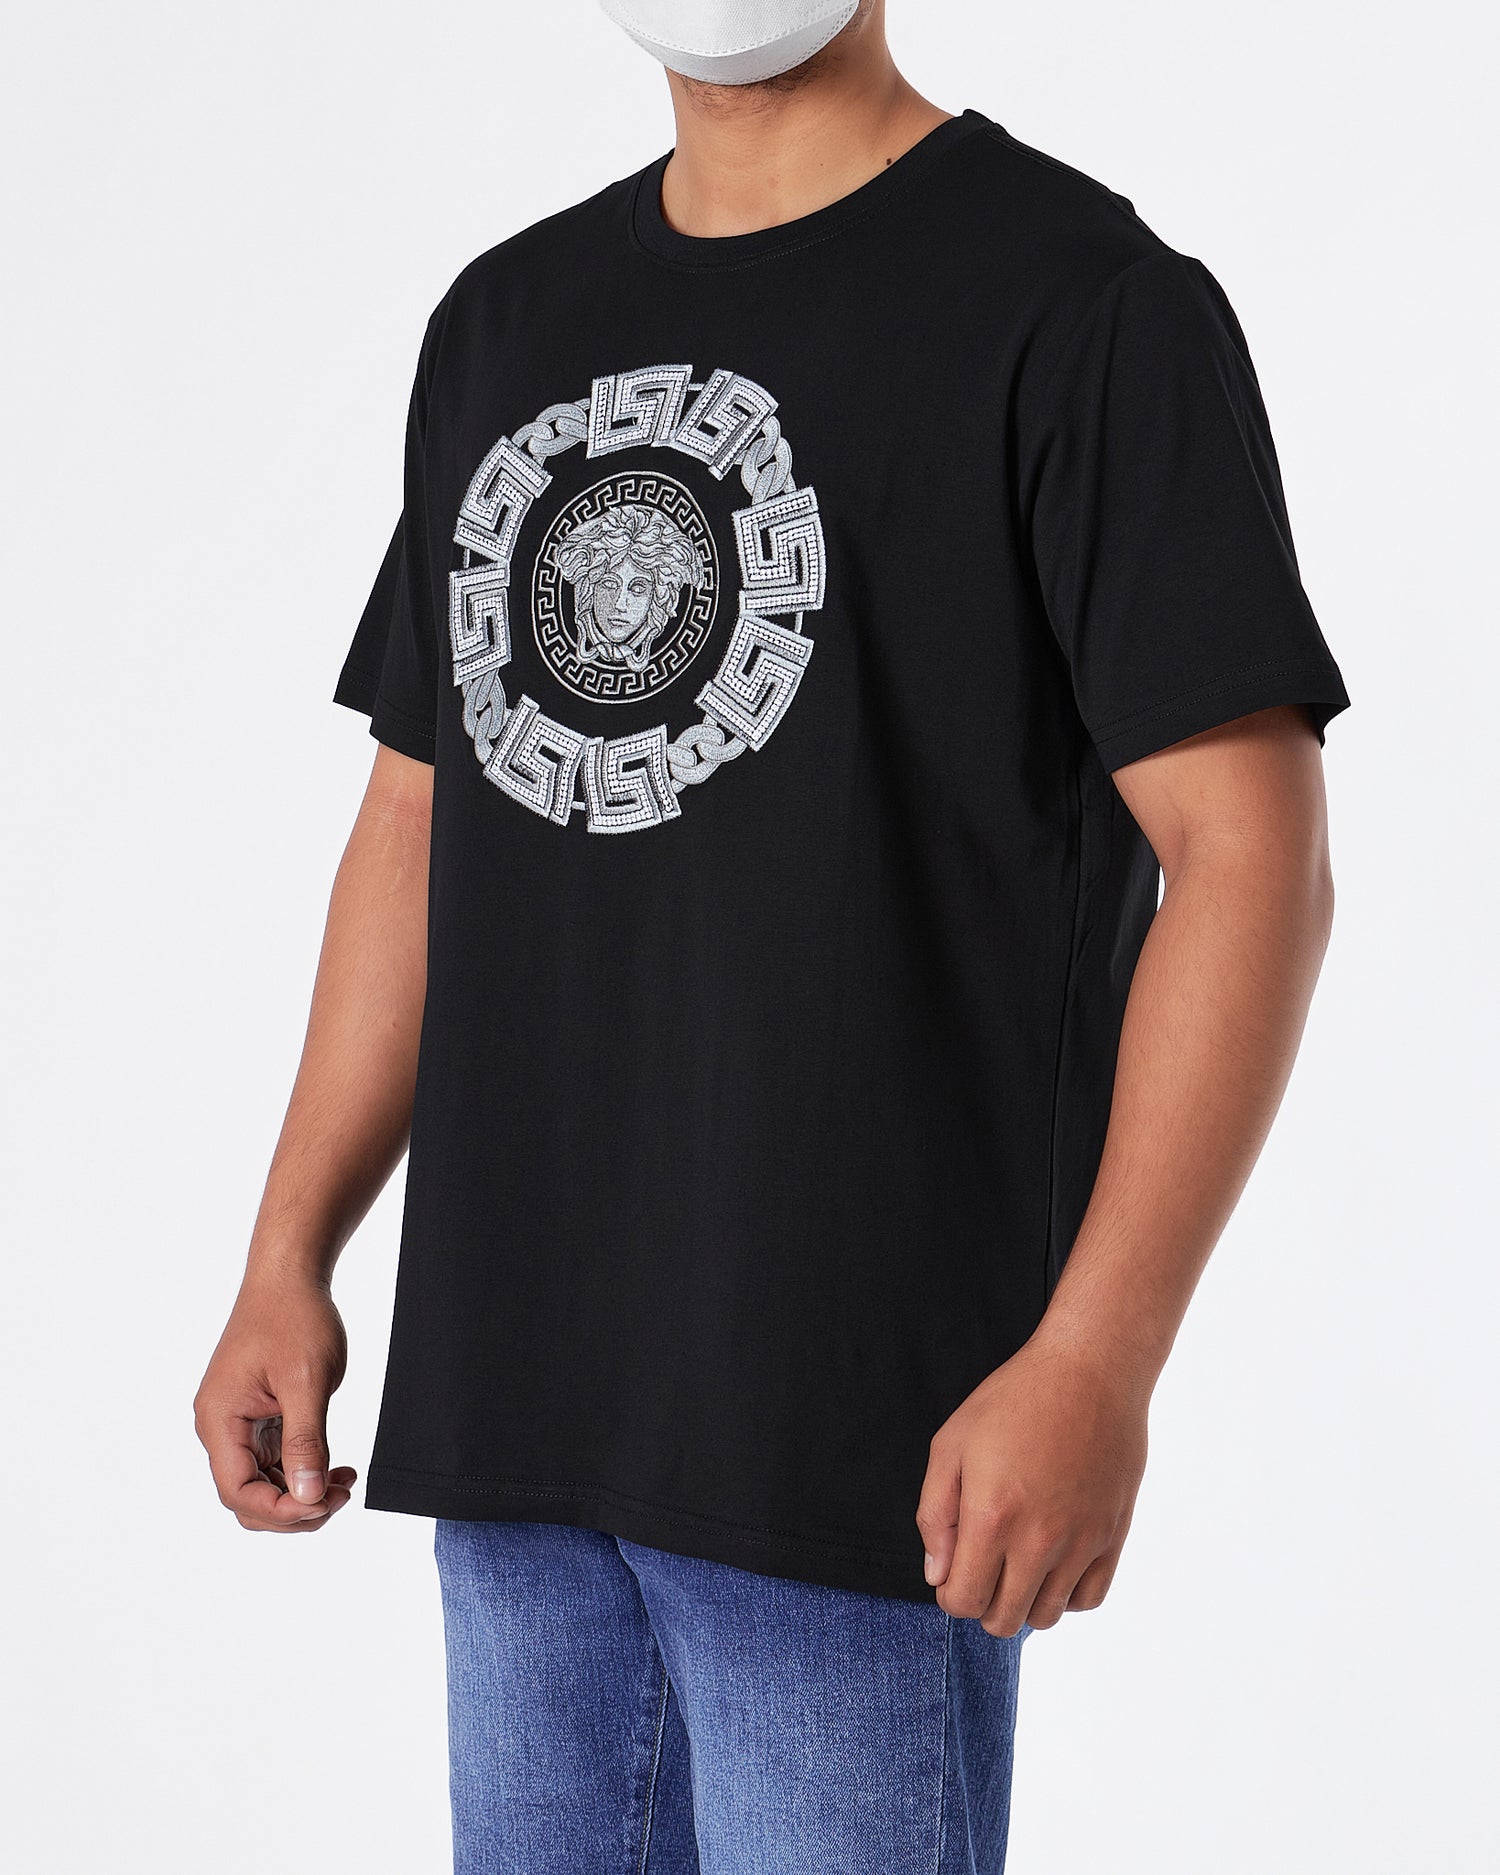 VER Medusa Silver Embroidered Men Black T-Shirt 24.90